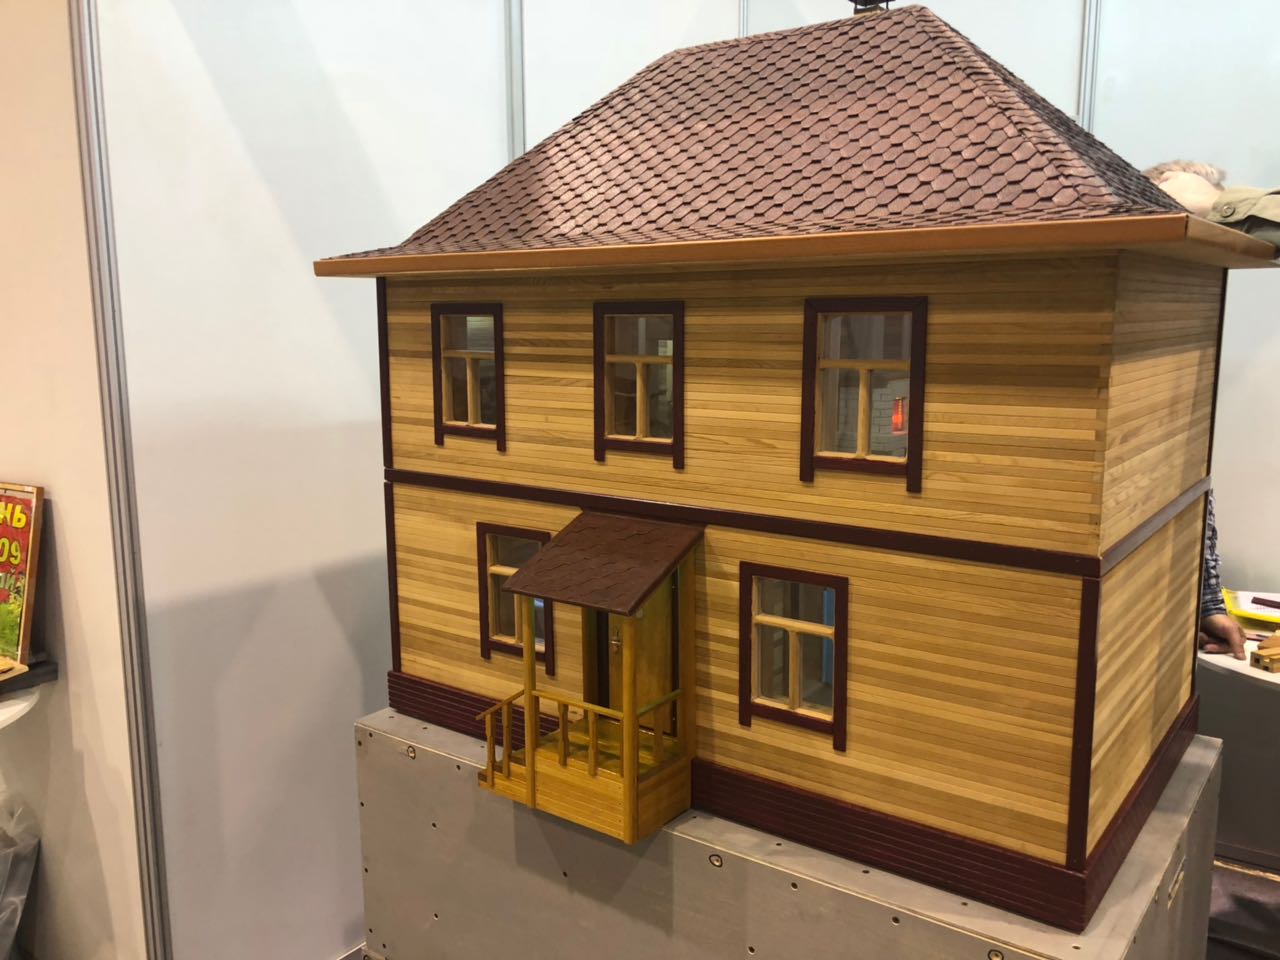 "Алтайский Теплый Дом" - принципиально новая технология деревянного домостроения